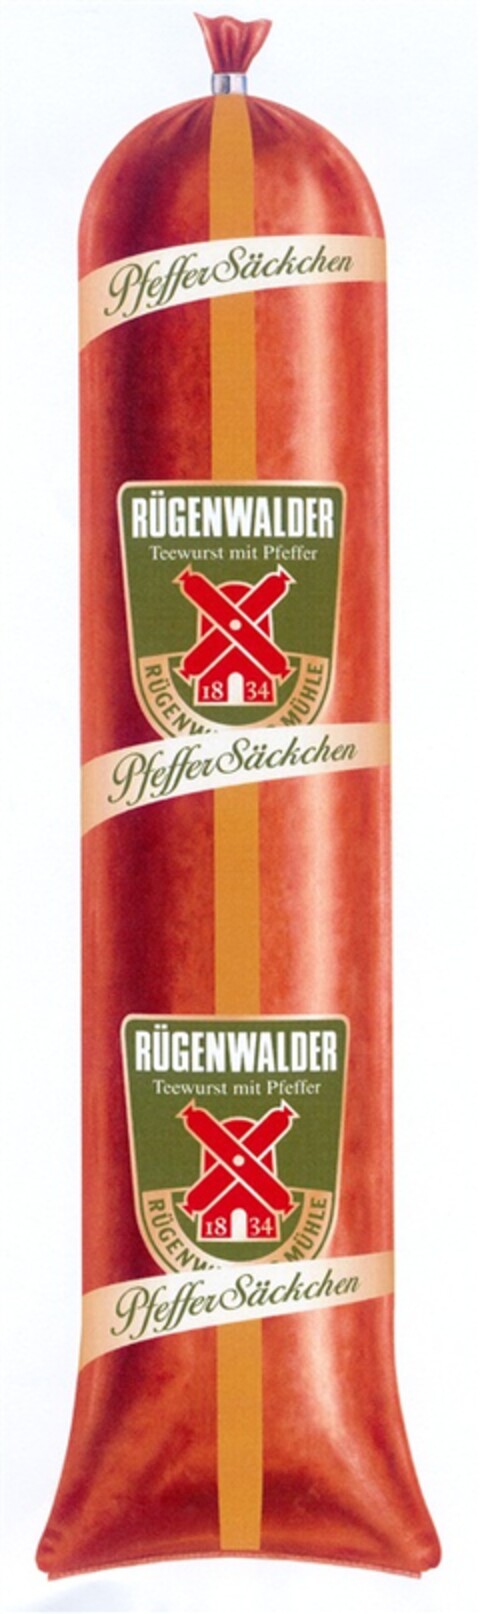 RÜGENWALDER PfefferSäckchen Logo (DPMA, 22.03.2007)